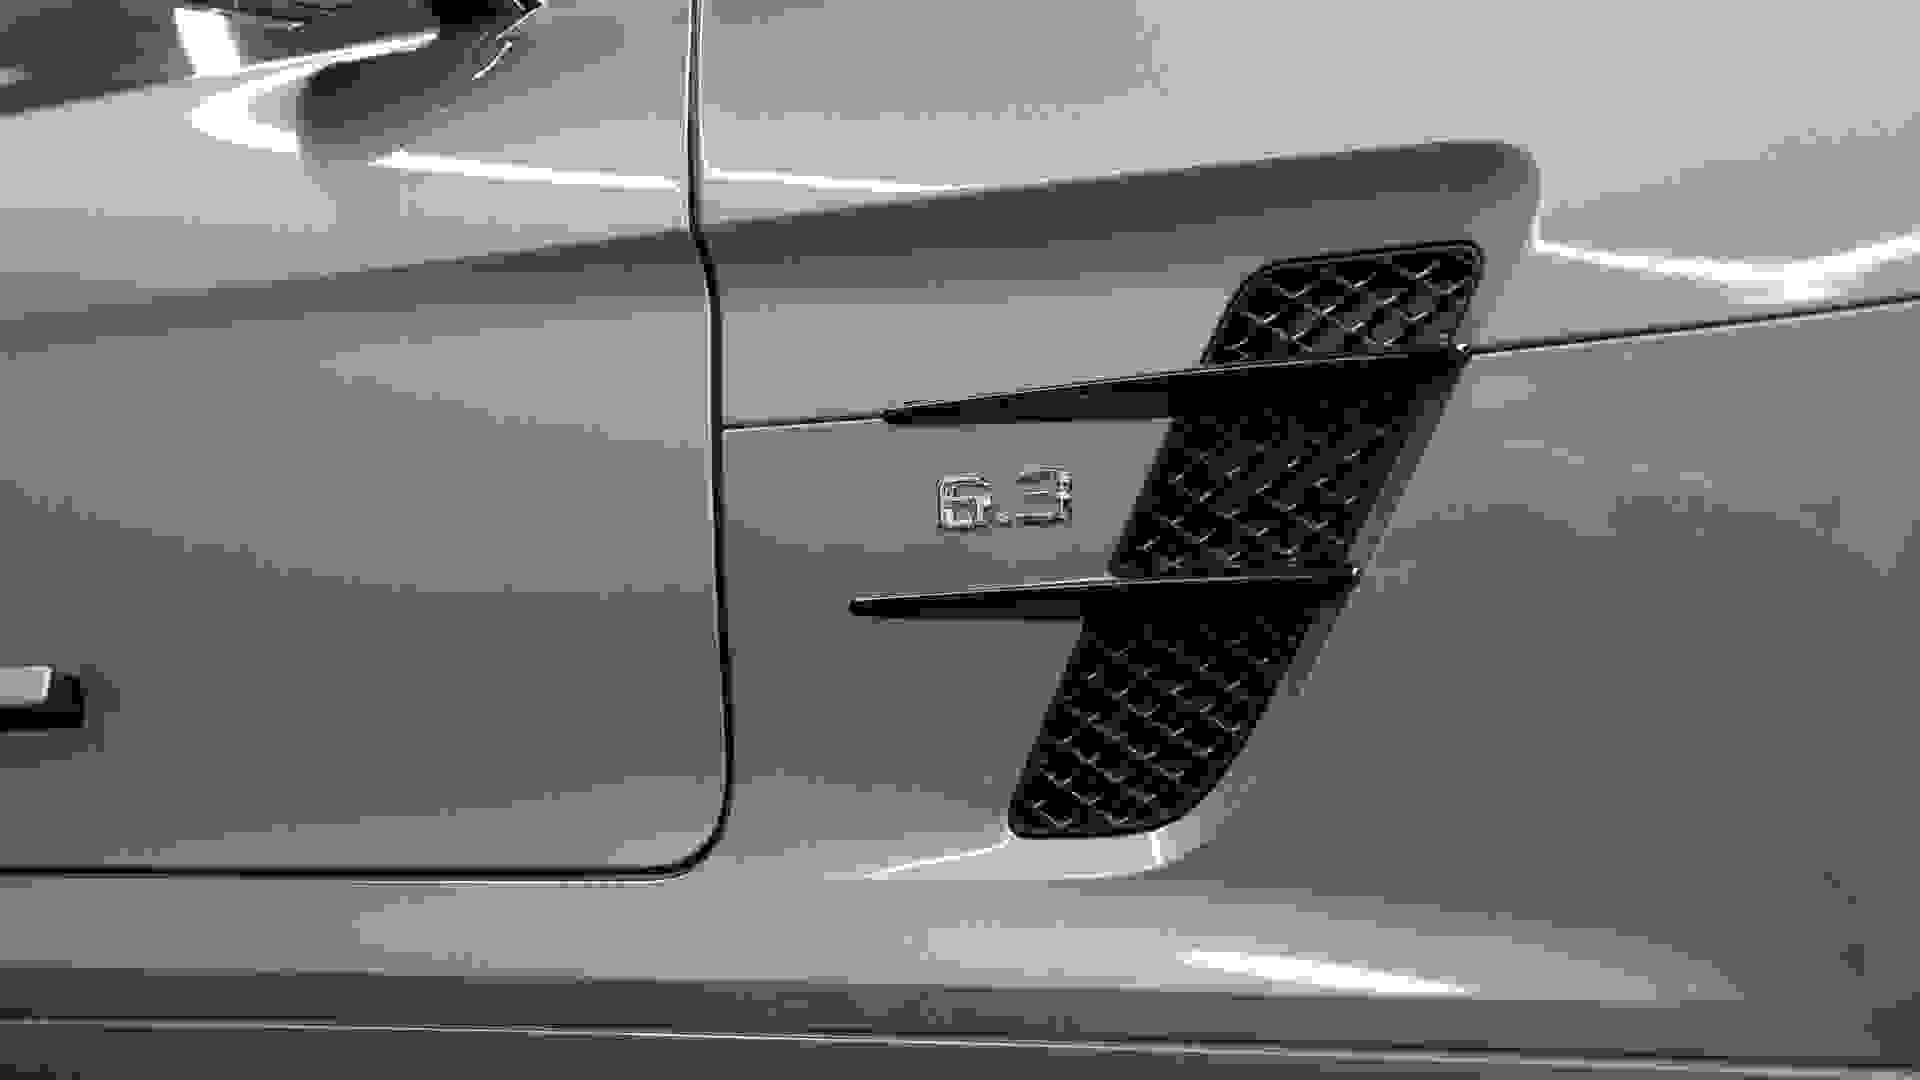 Mercedes-Benz SLS AMG Photo 7df17be0-ecf8-467d-922f-5cb6277c978a.jpg